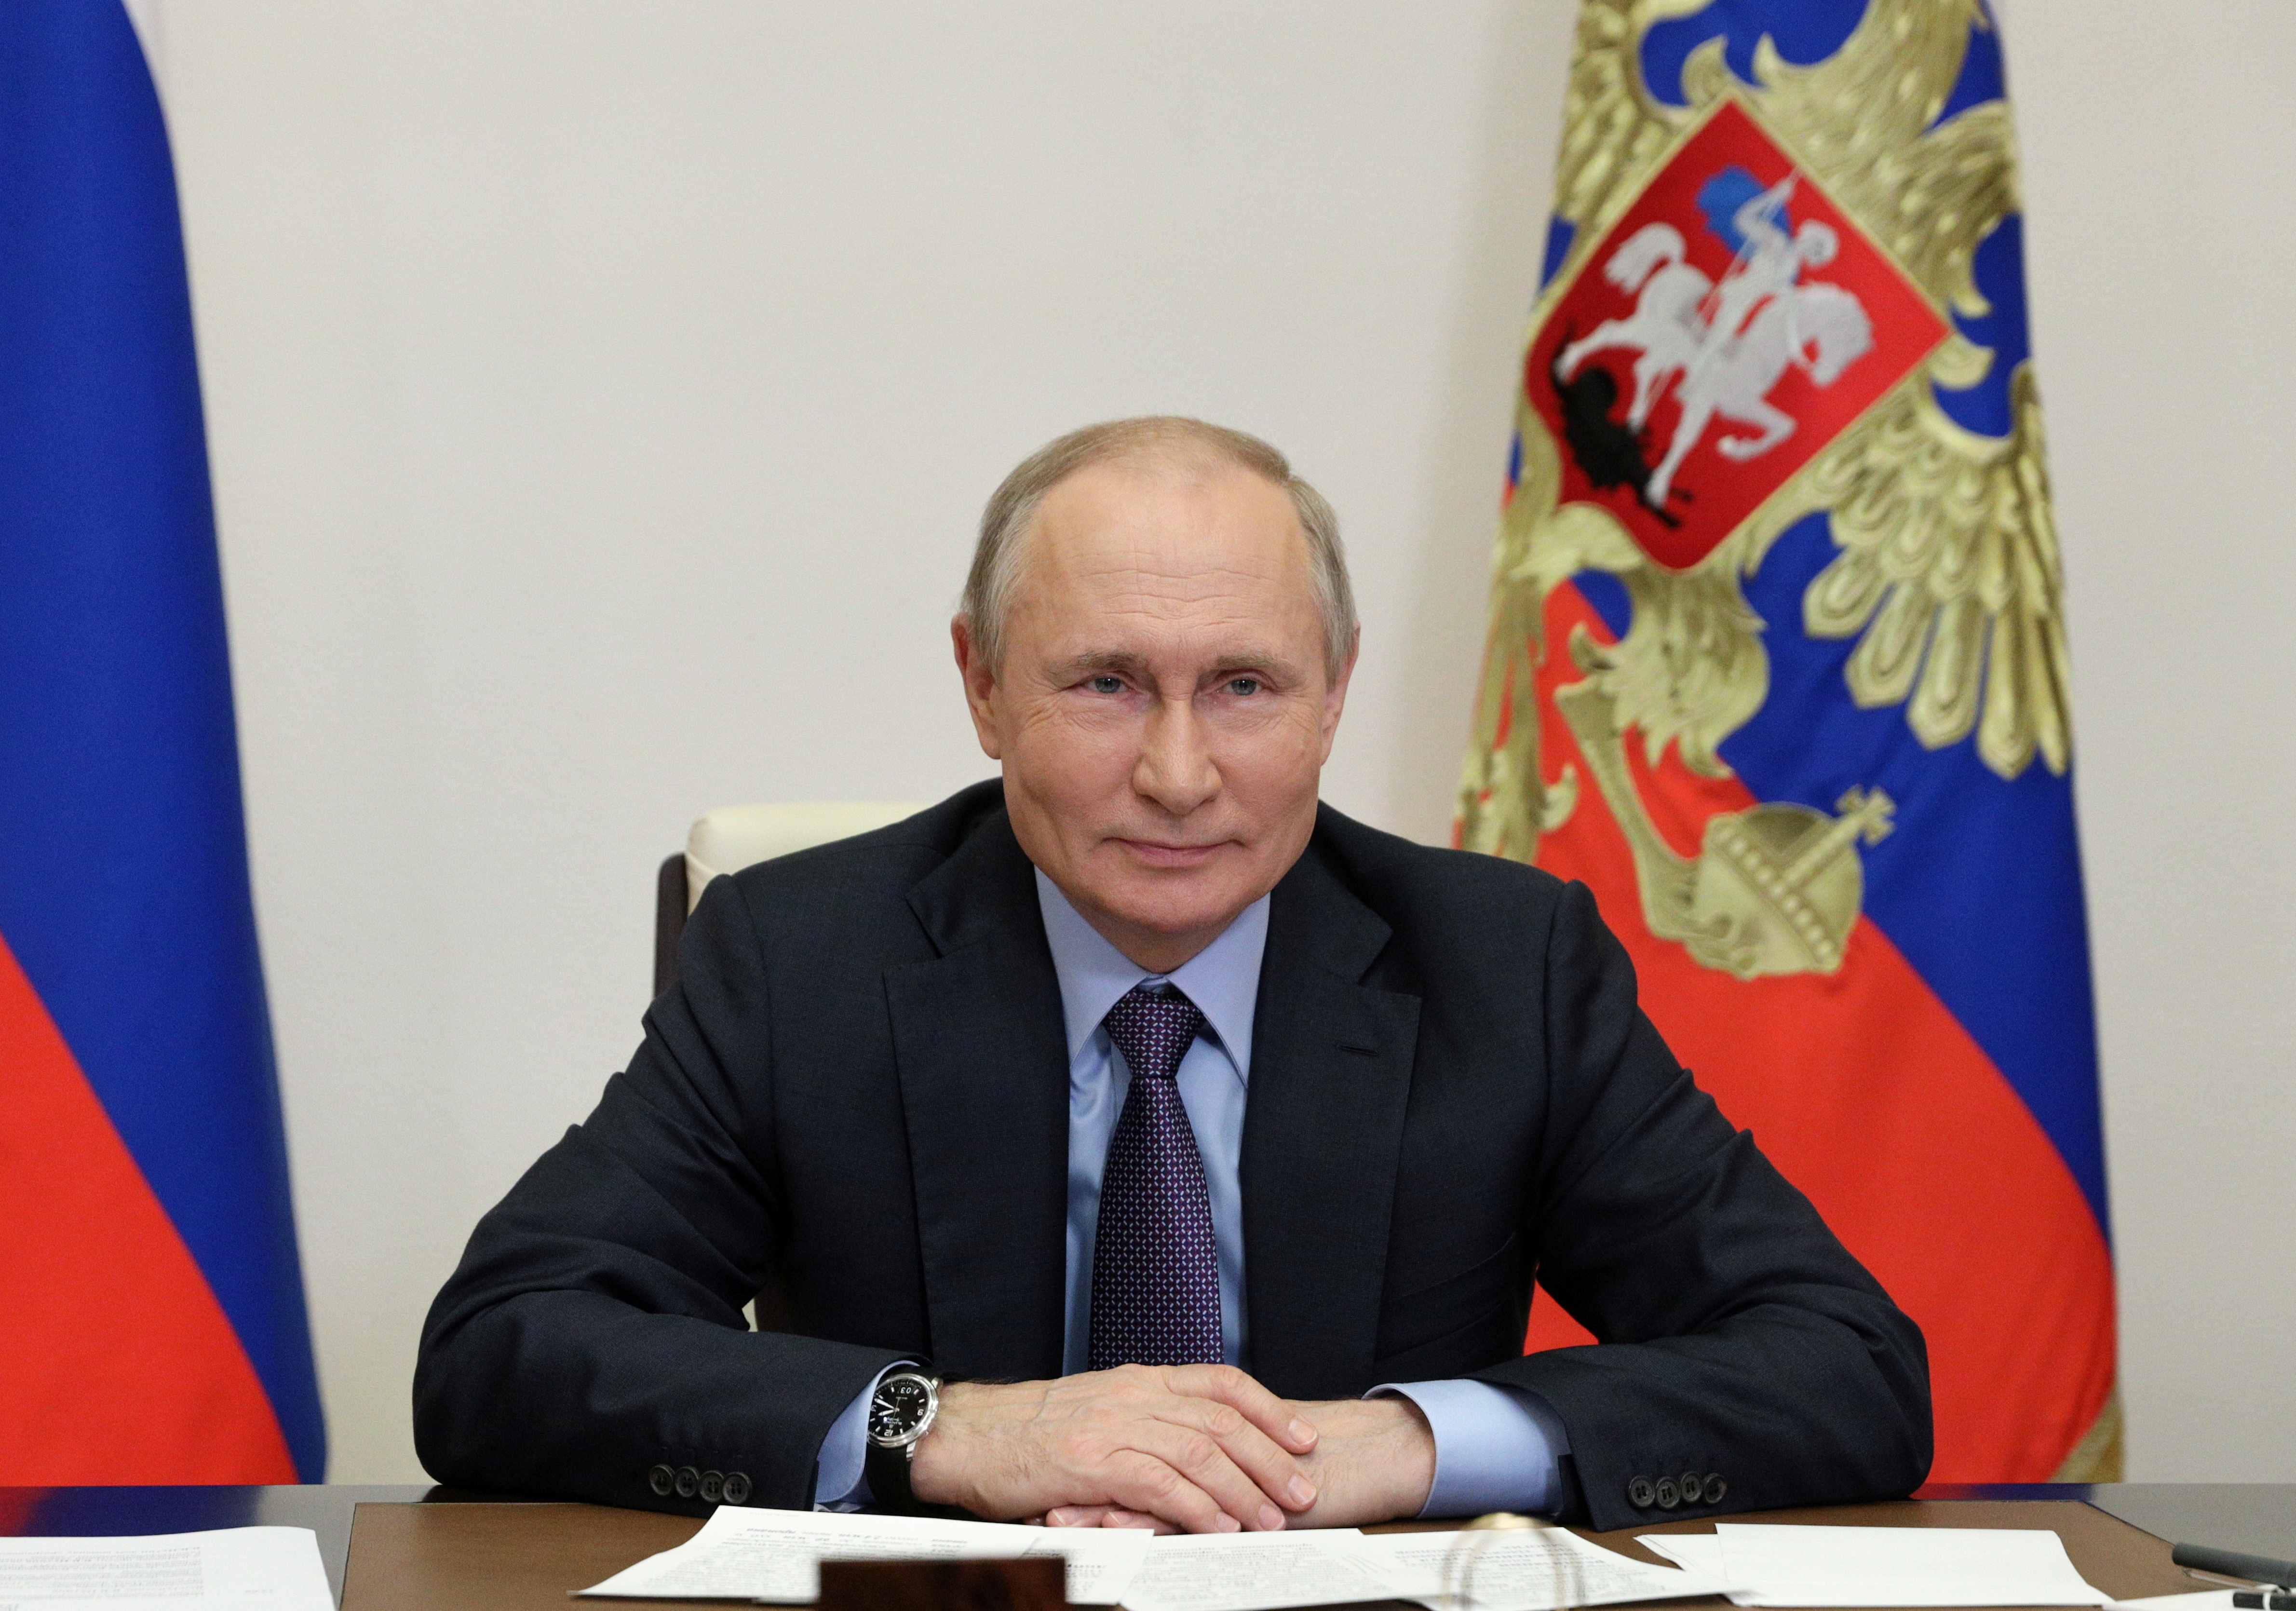 Venäjän presidentti Vladimir Putin osallistuu Gazprom-yhtiön hallinnoiman Amurin kaasunkäsittelylaitoksen käynnistämisseremoniaan videolinkin kautta Moskovan ulkopuolella, Venäjällä 9. Sputnik/Sergei Ilyin/Kremlin REUTERSin kautta